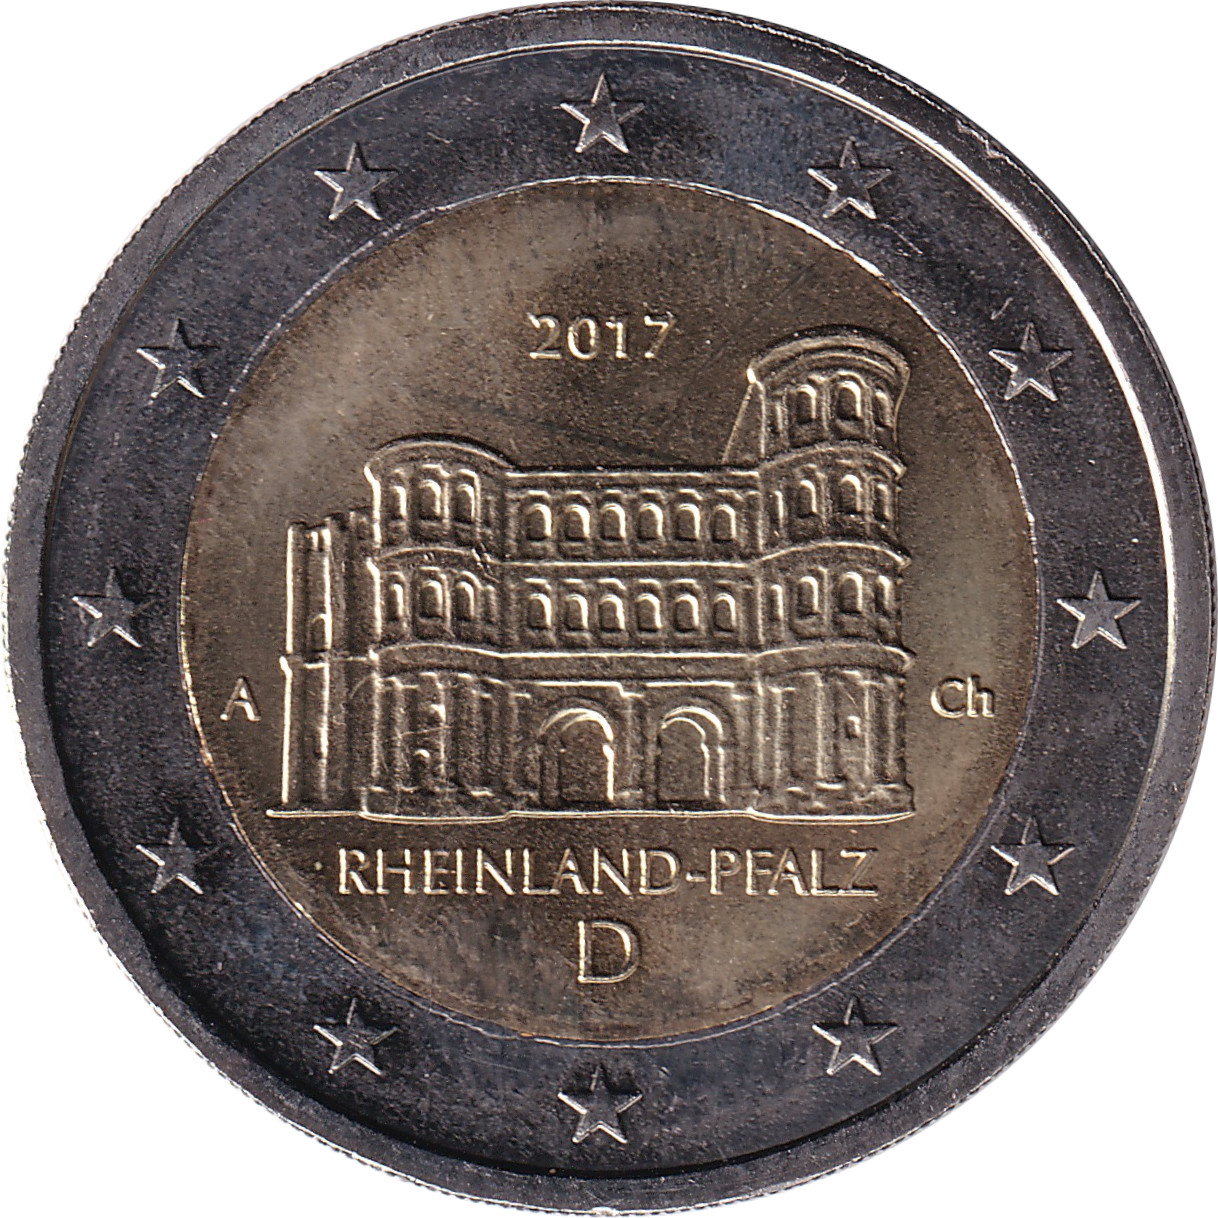 2 euro - Rheinland-Pfalz